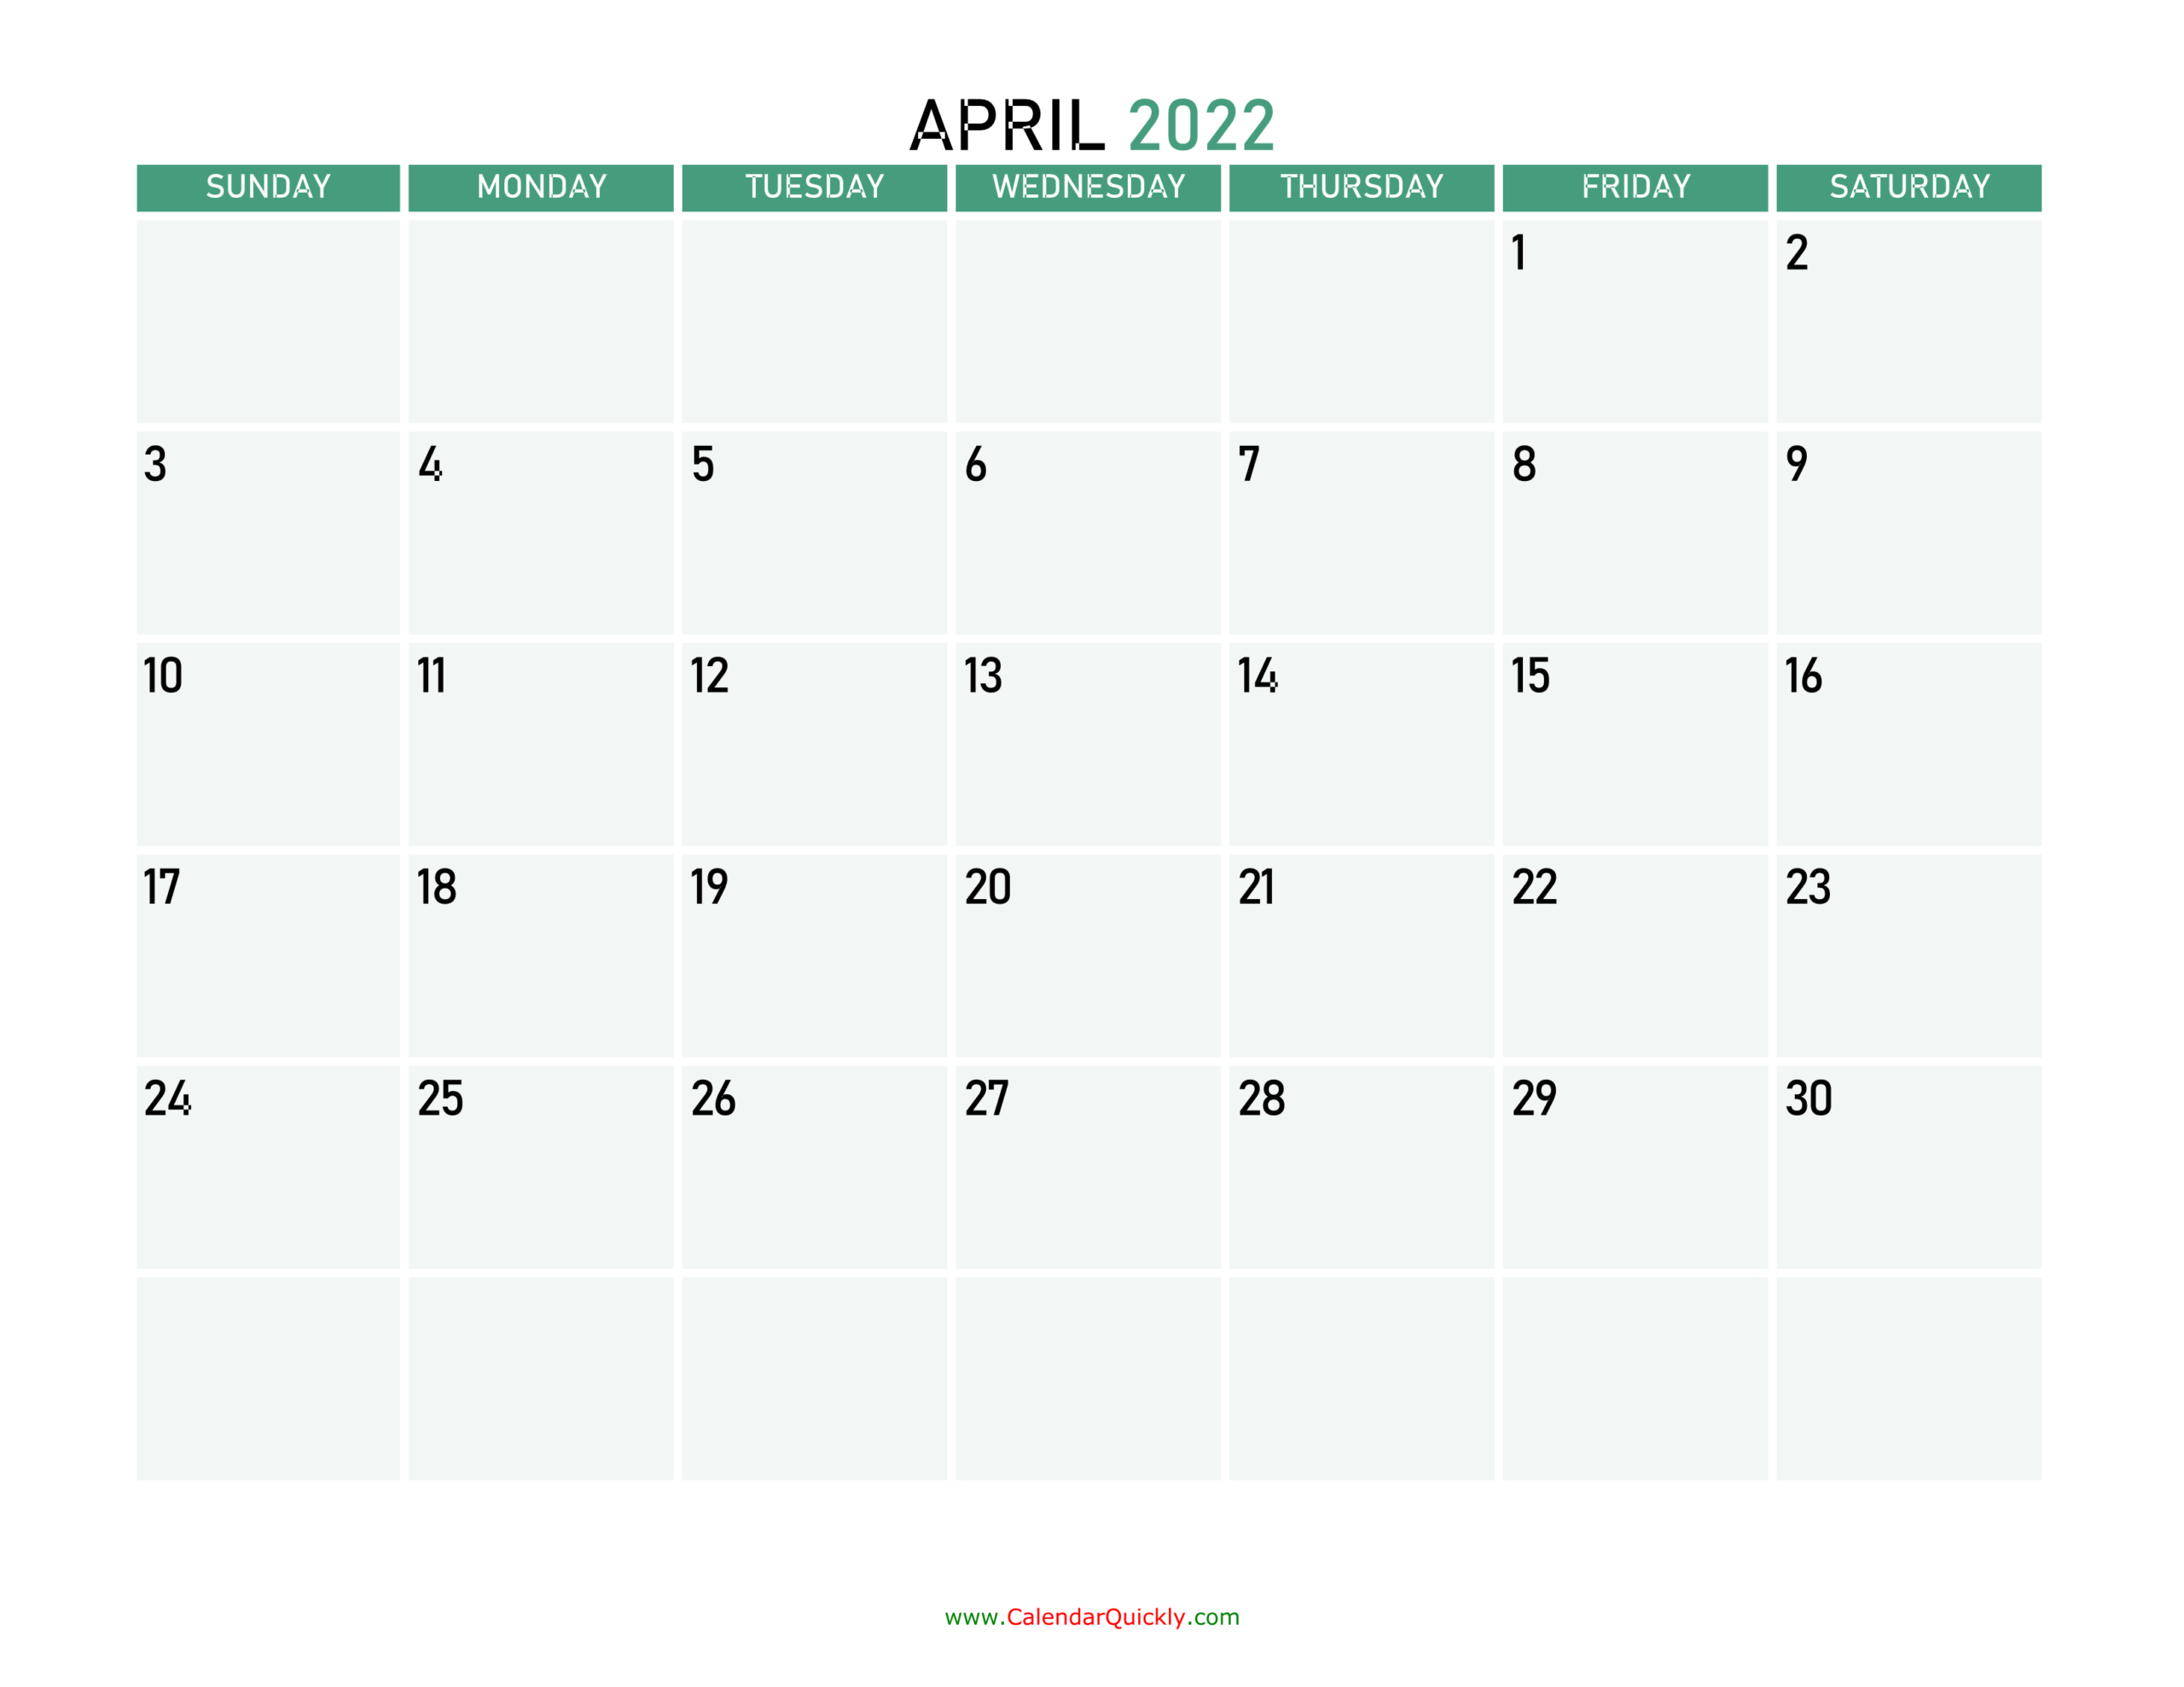 April 2022 Calendars | Calendar Quickly